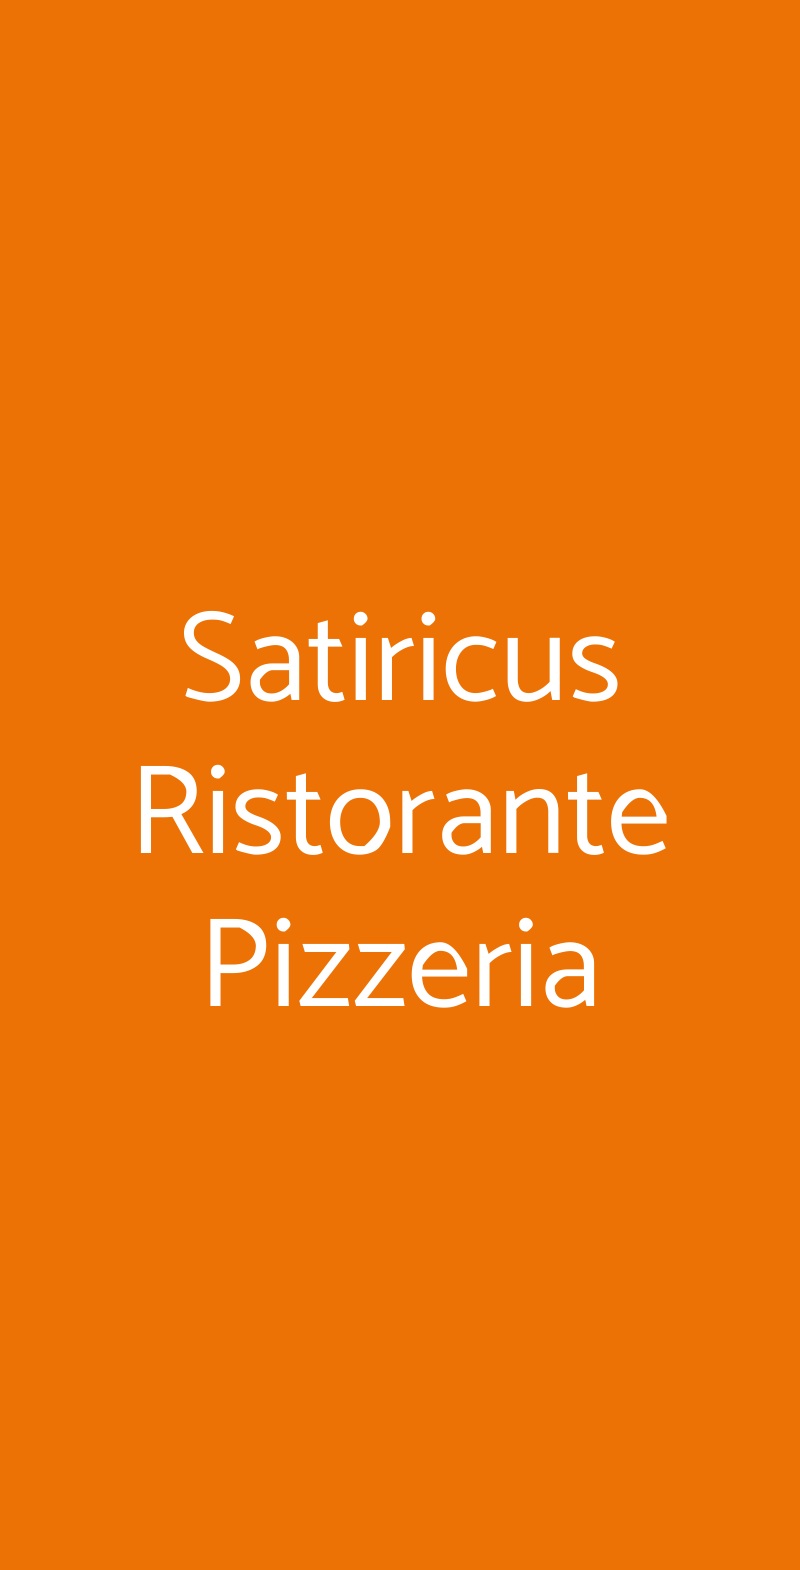 Satiricus Ristorante Pizzeria Roma menù 1 pagina